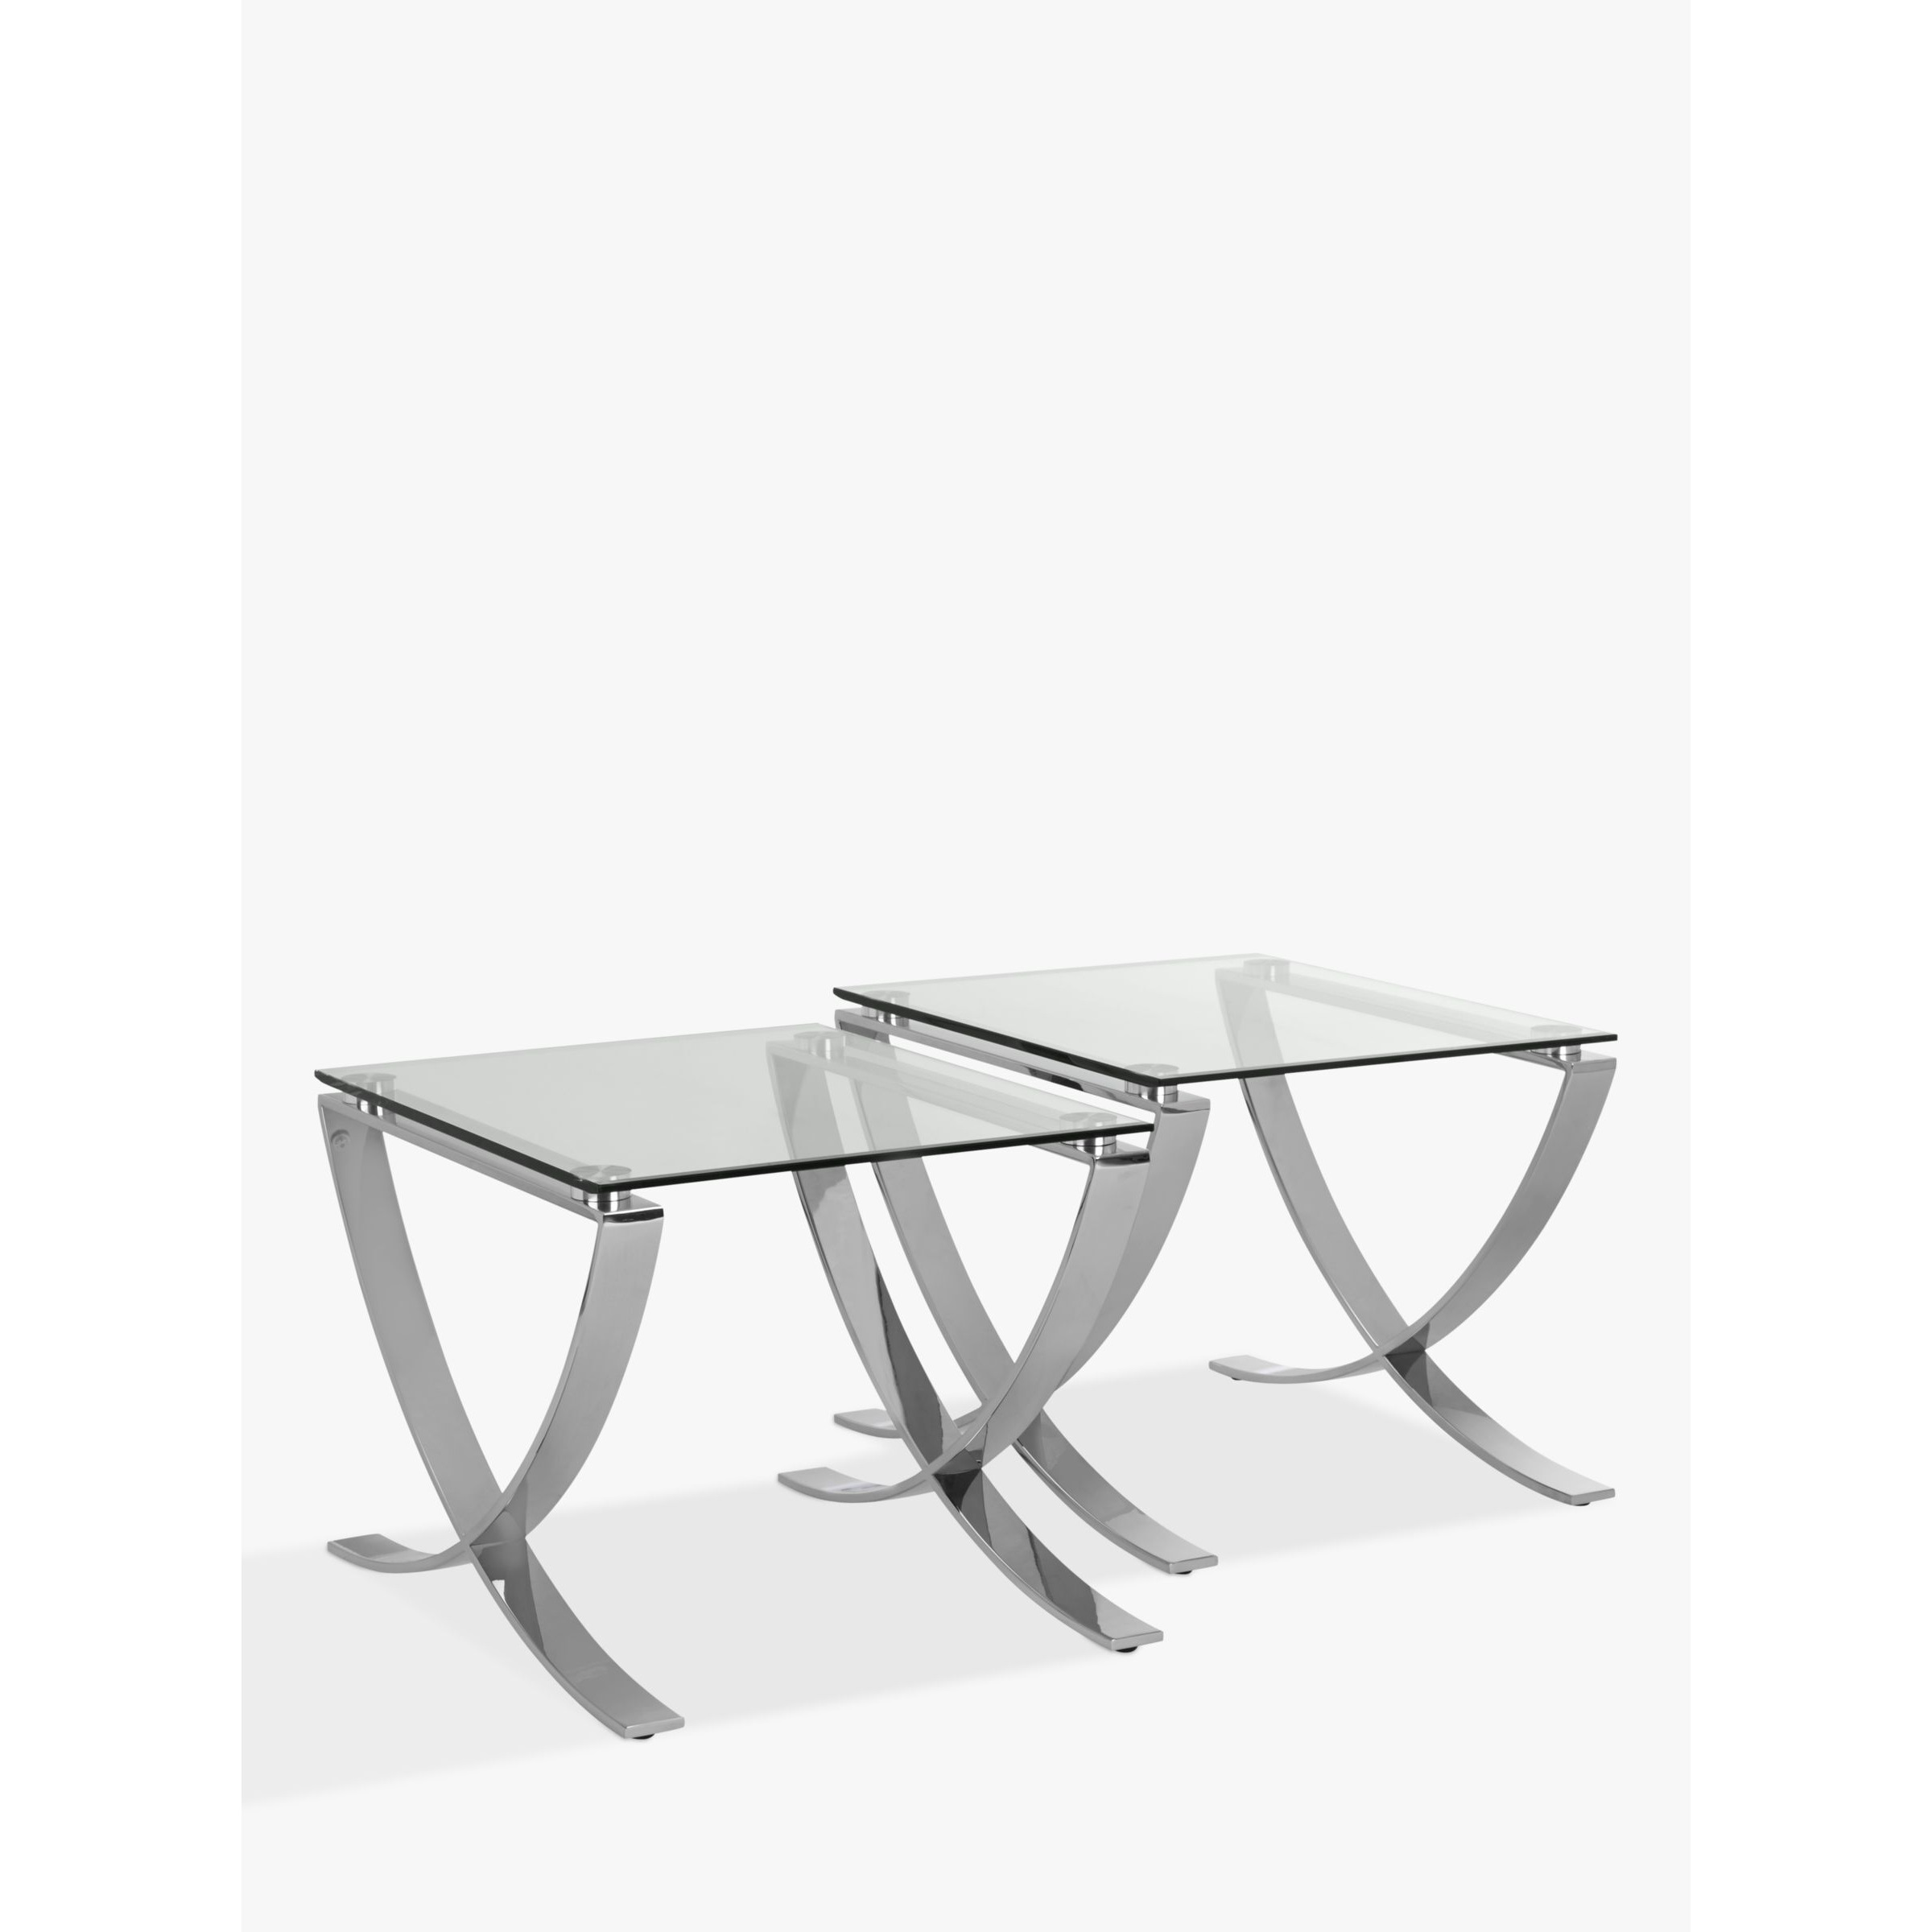 John Lewis Moritz Side Tables, Set of 2, Clear/Polished Steel - image 1